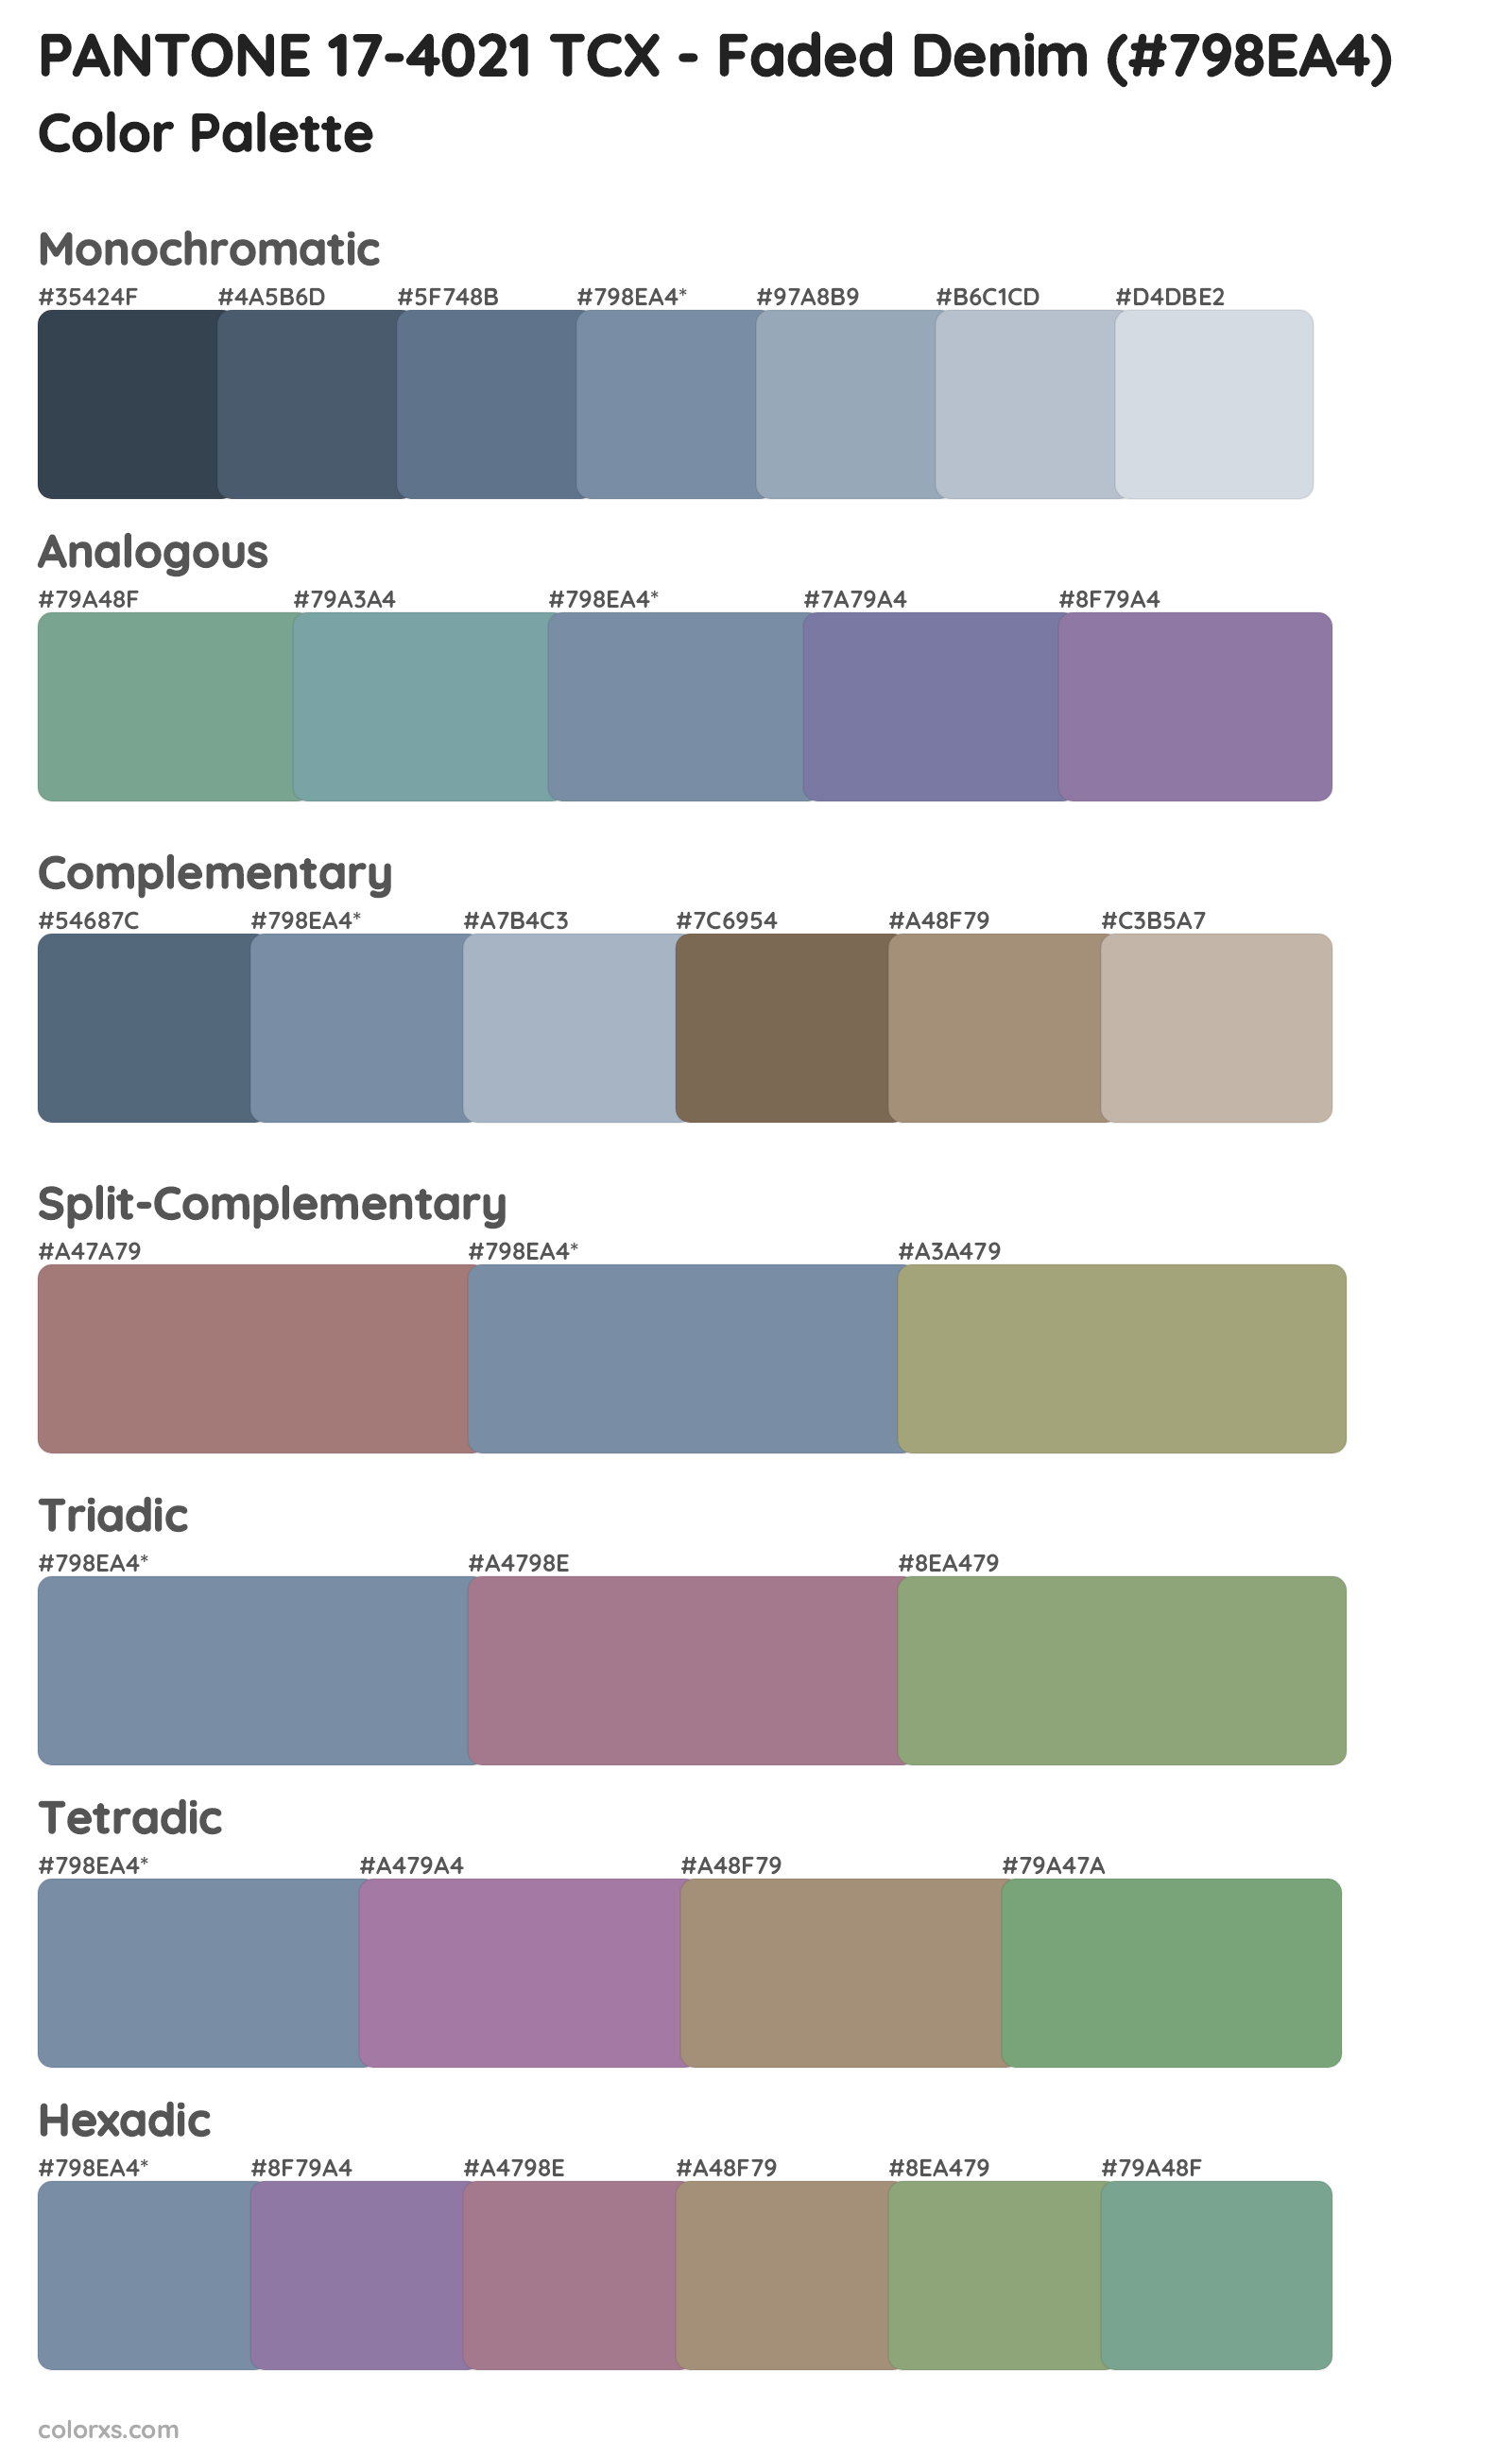 PANTONE 17-4021 TCX - Faded Denim Color Scheme Palettes